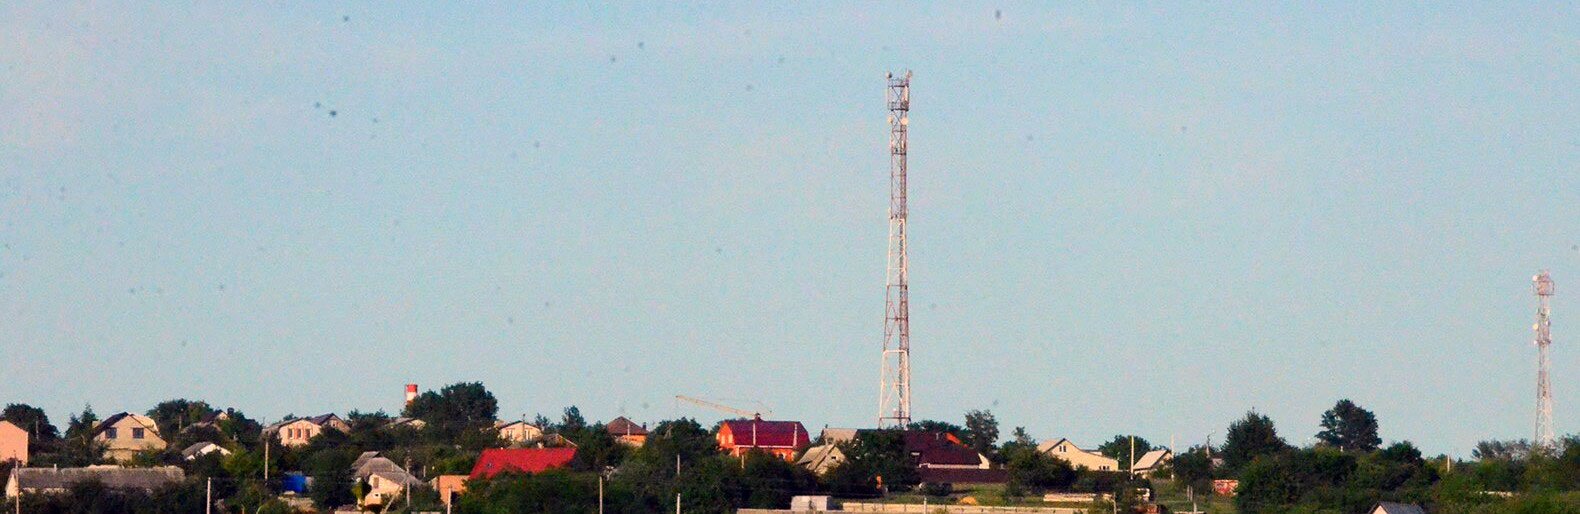 Для покрытия всех малых сёл Белгородской области сотовой связью потребуется ещё 96 новых базовых станций